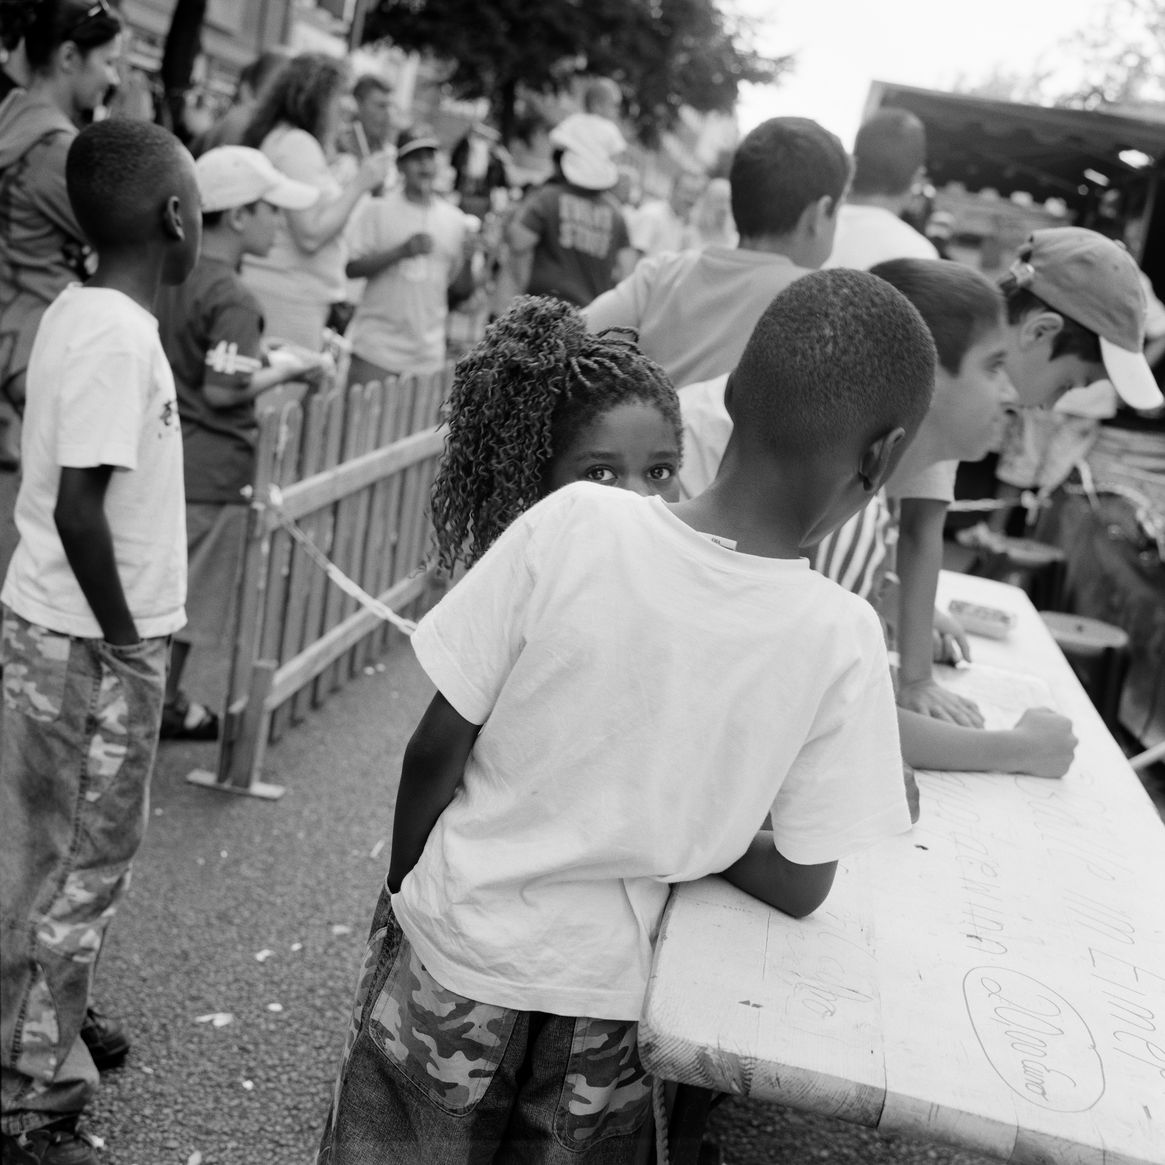 Schwarz-weiß-Fotografie: Blick auf ein Fest im Freien. Zwei Kinder stehen neben einem langen Tisch, eine Person blickt direkt in die Kamera und wird teilweise von der anderen Person verdeckt. 